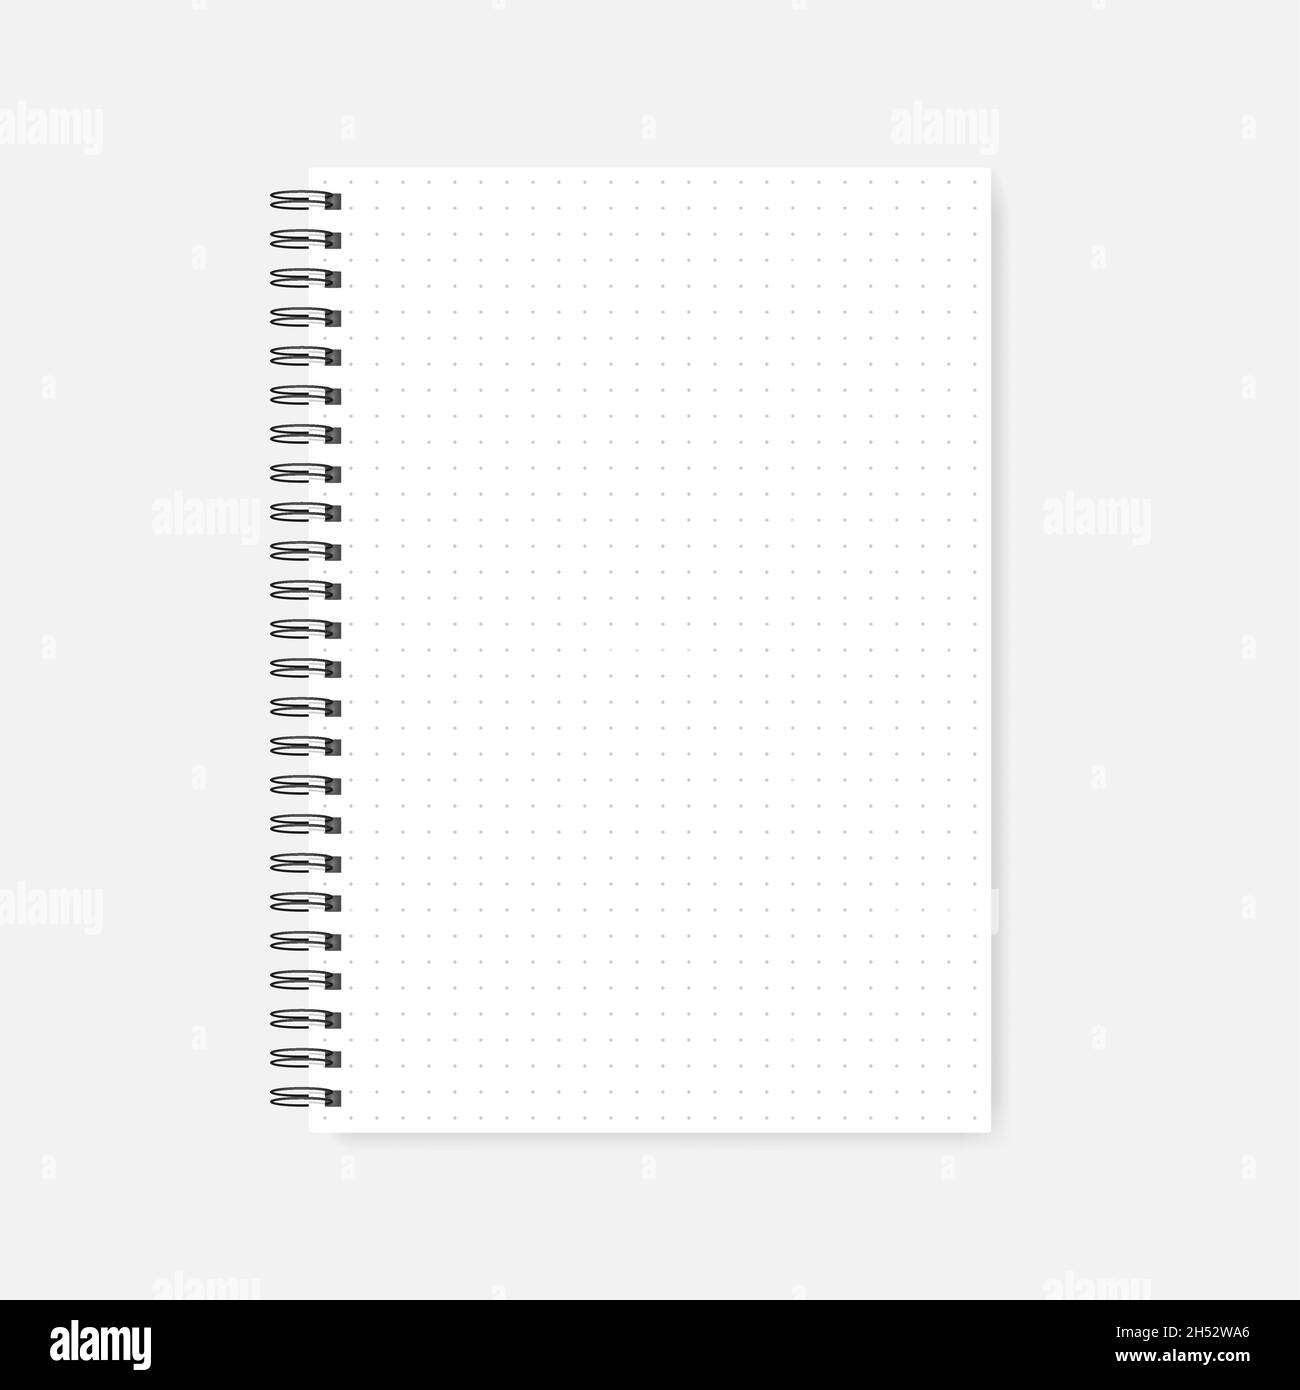 Carnet de notes de planificateur de pages de grille pointillée,a5